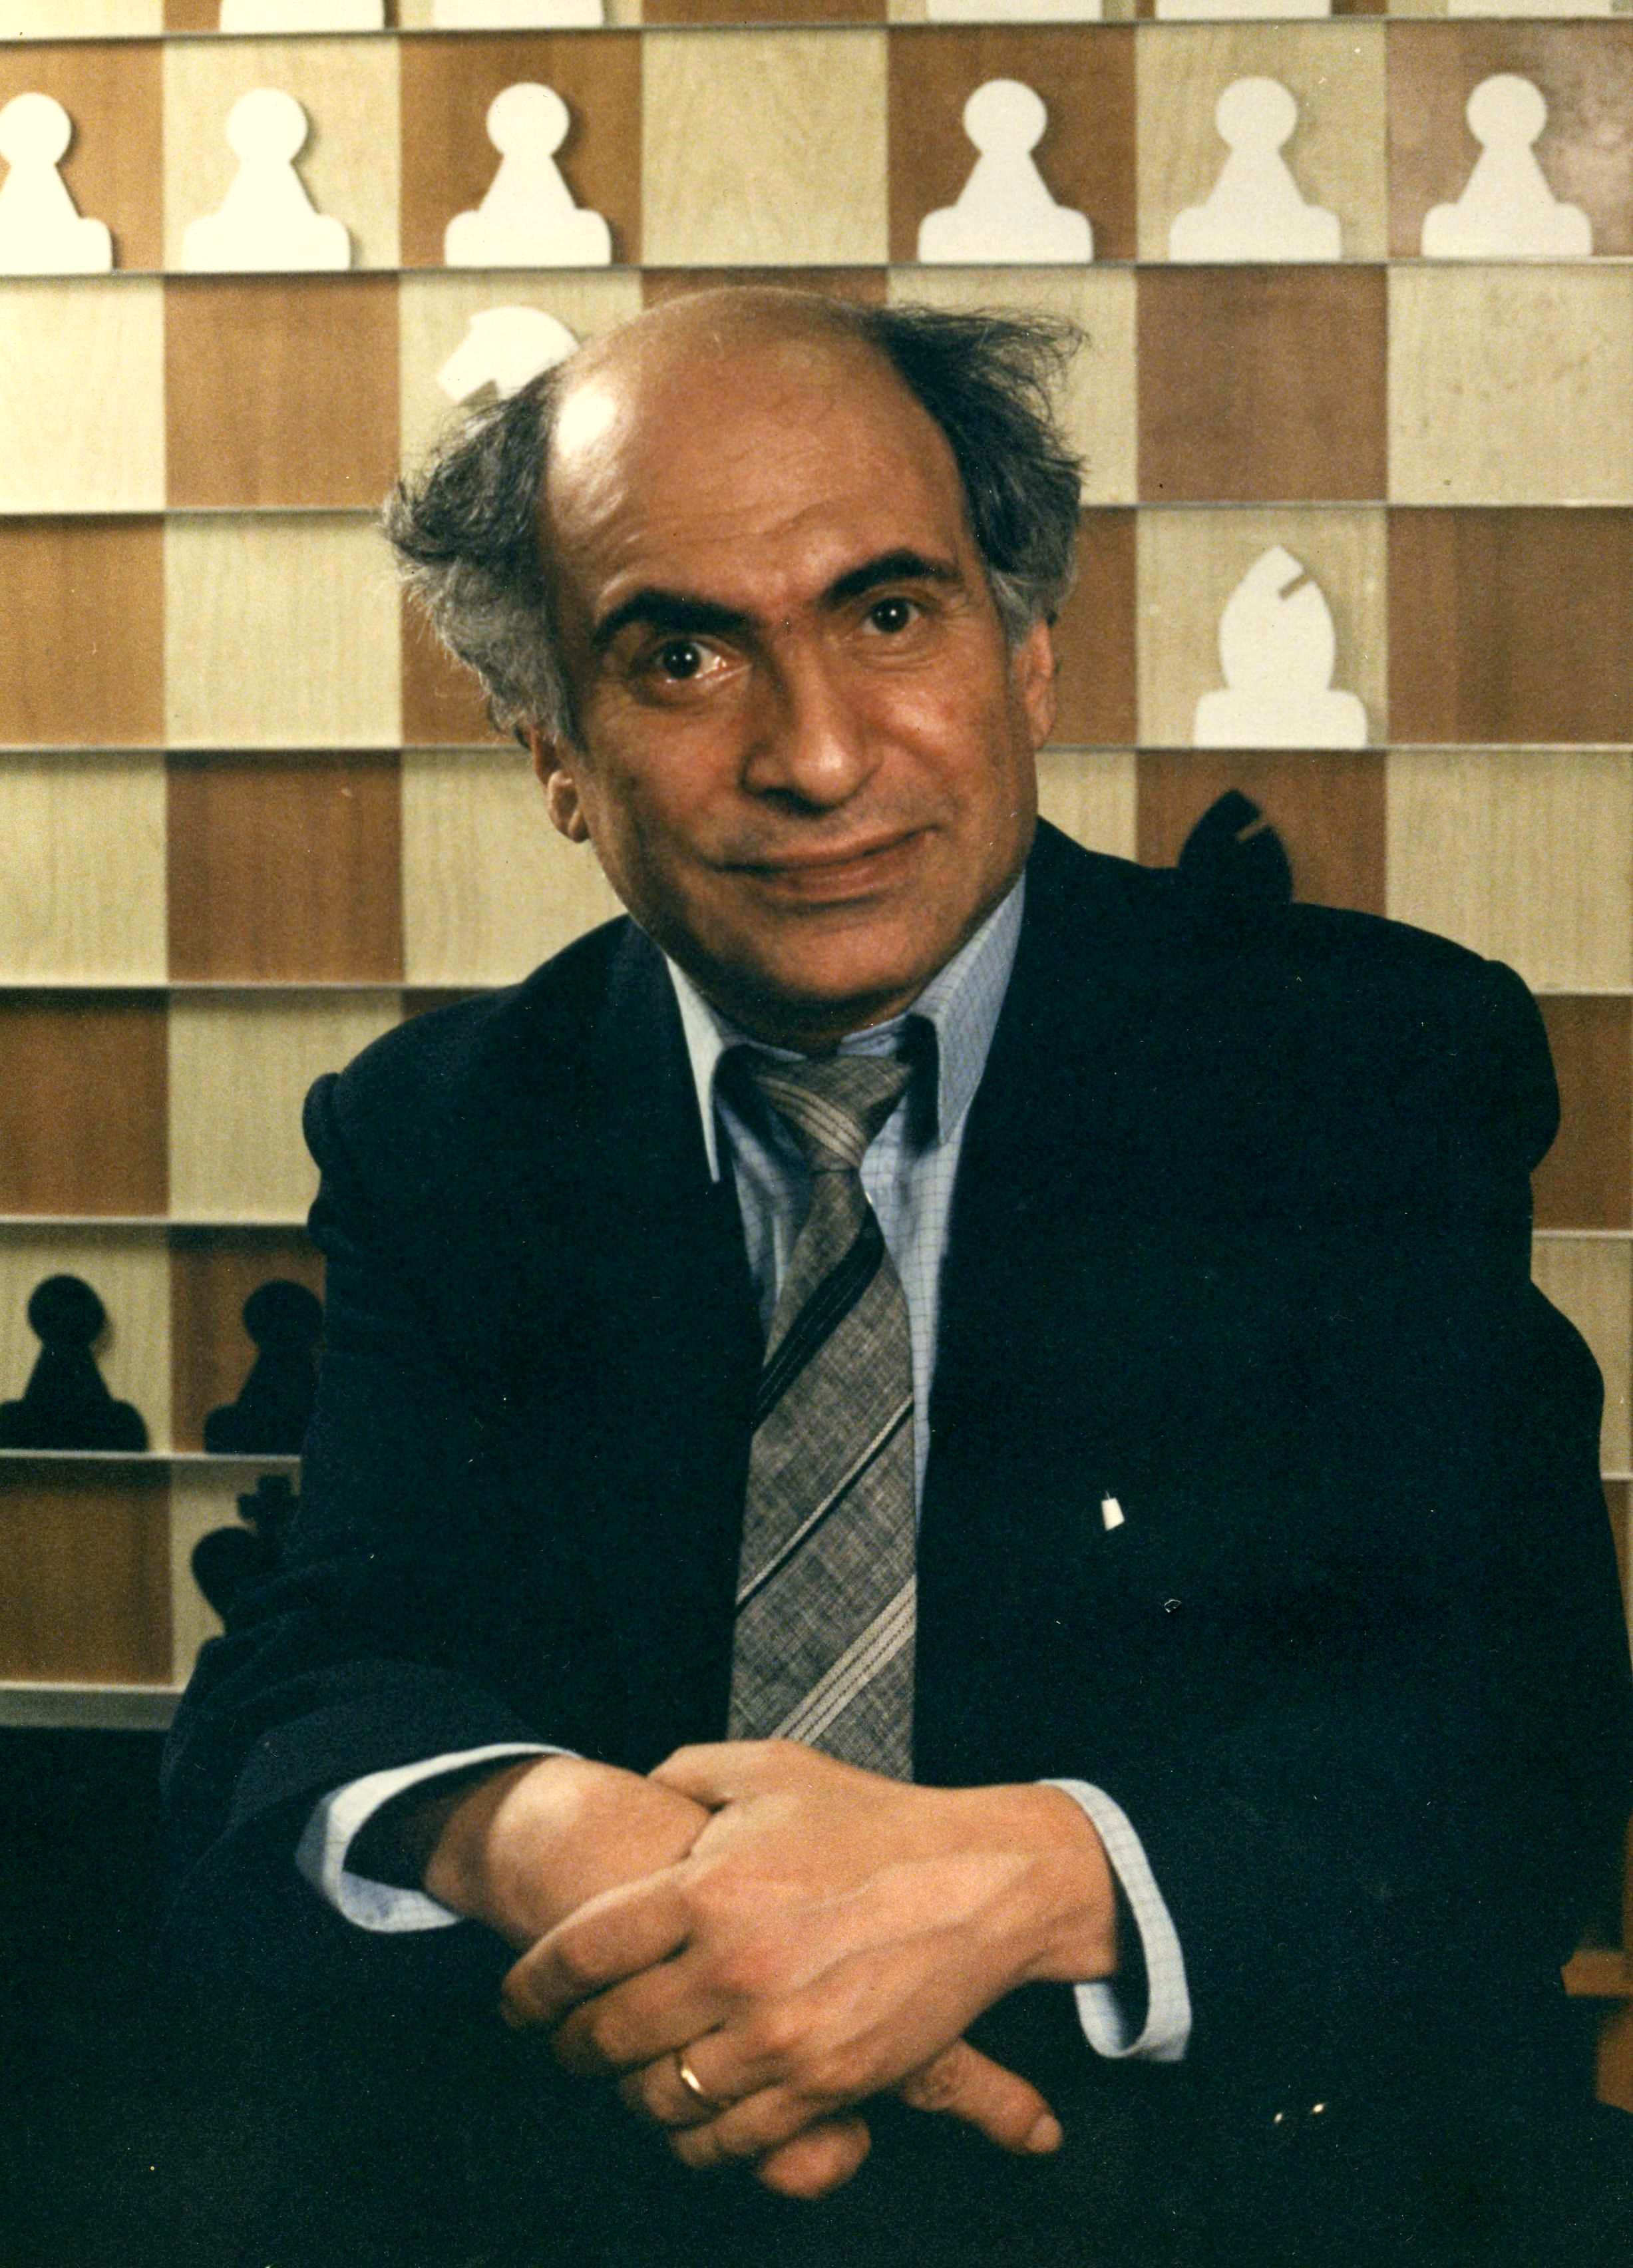 Mikhail Tal